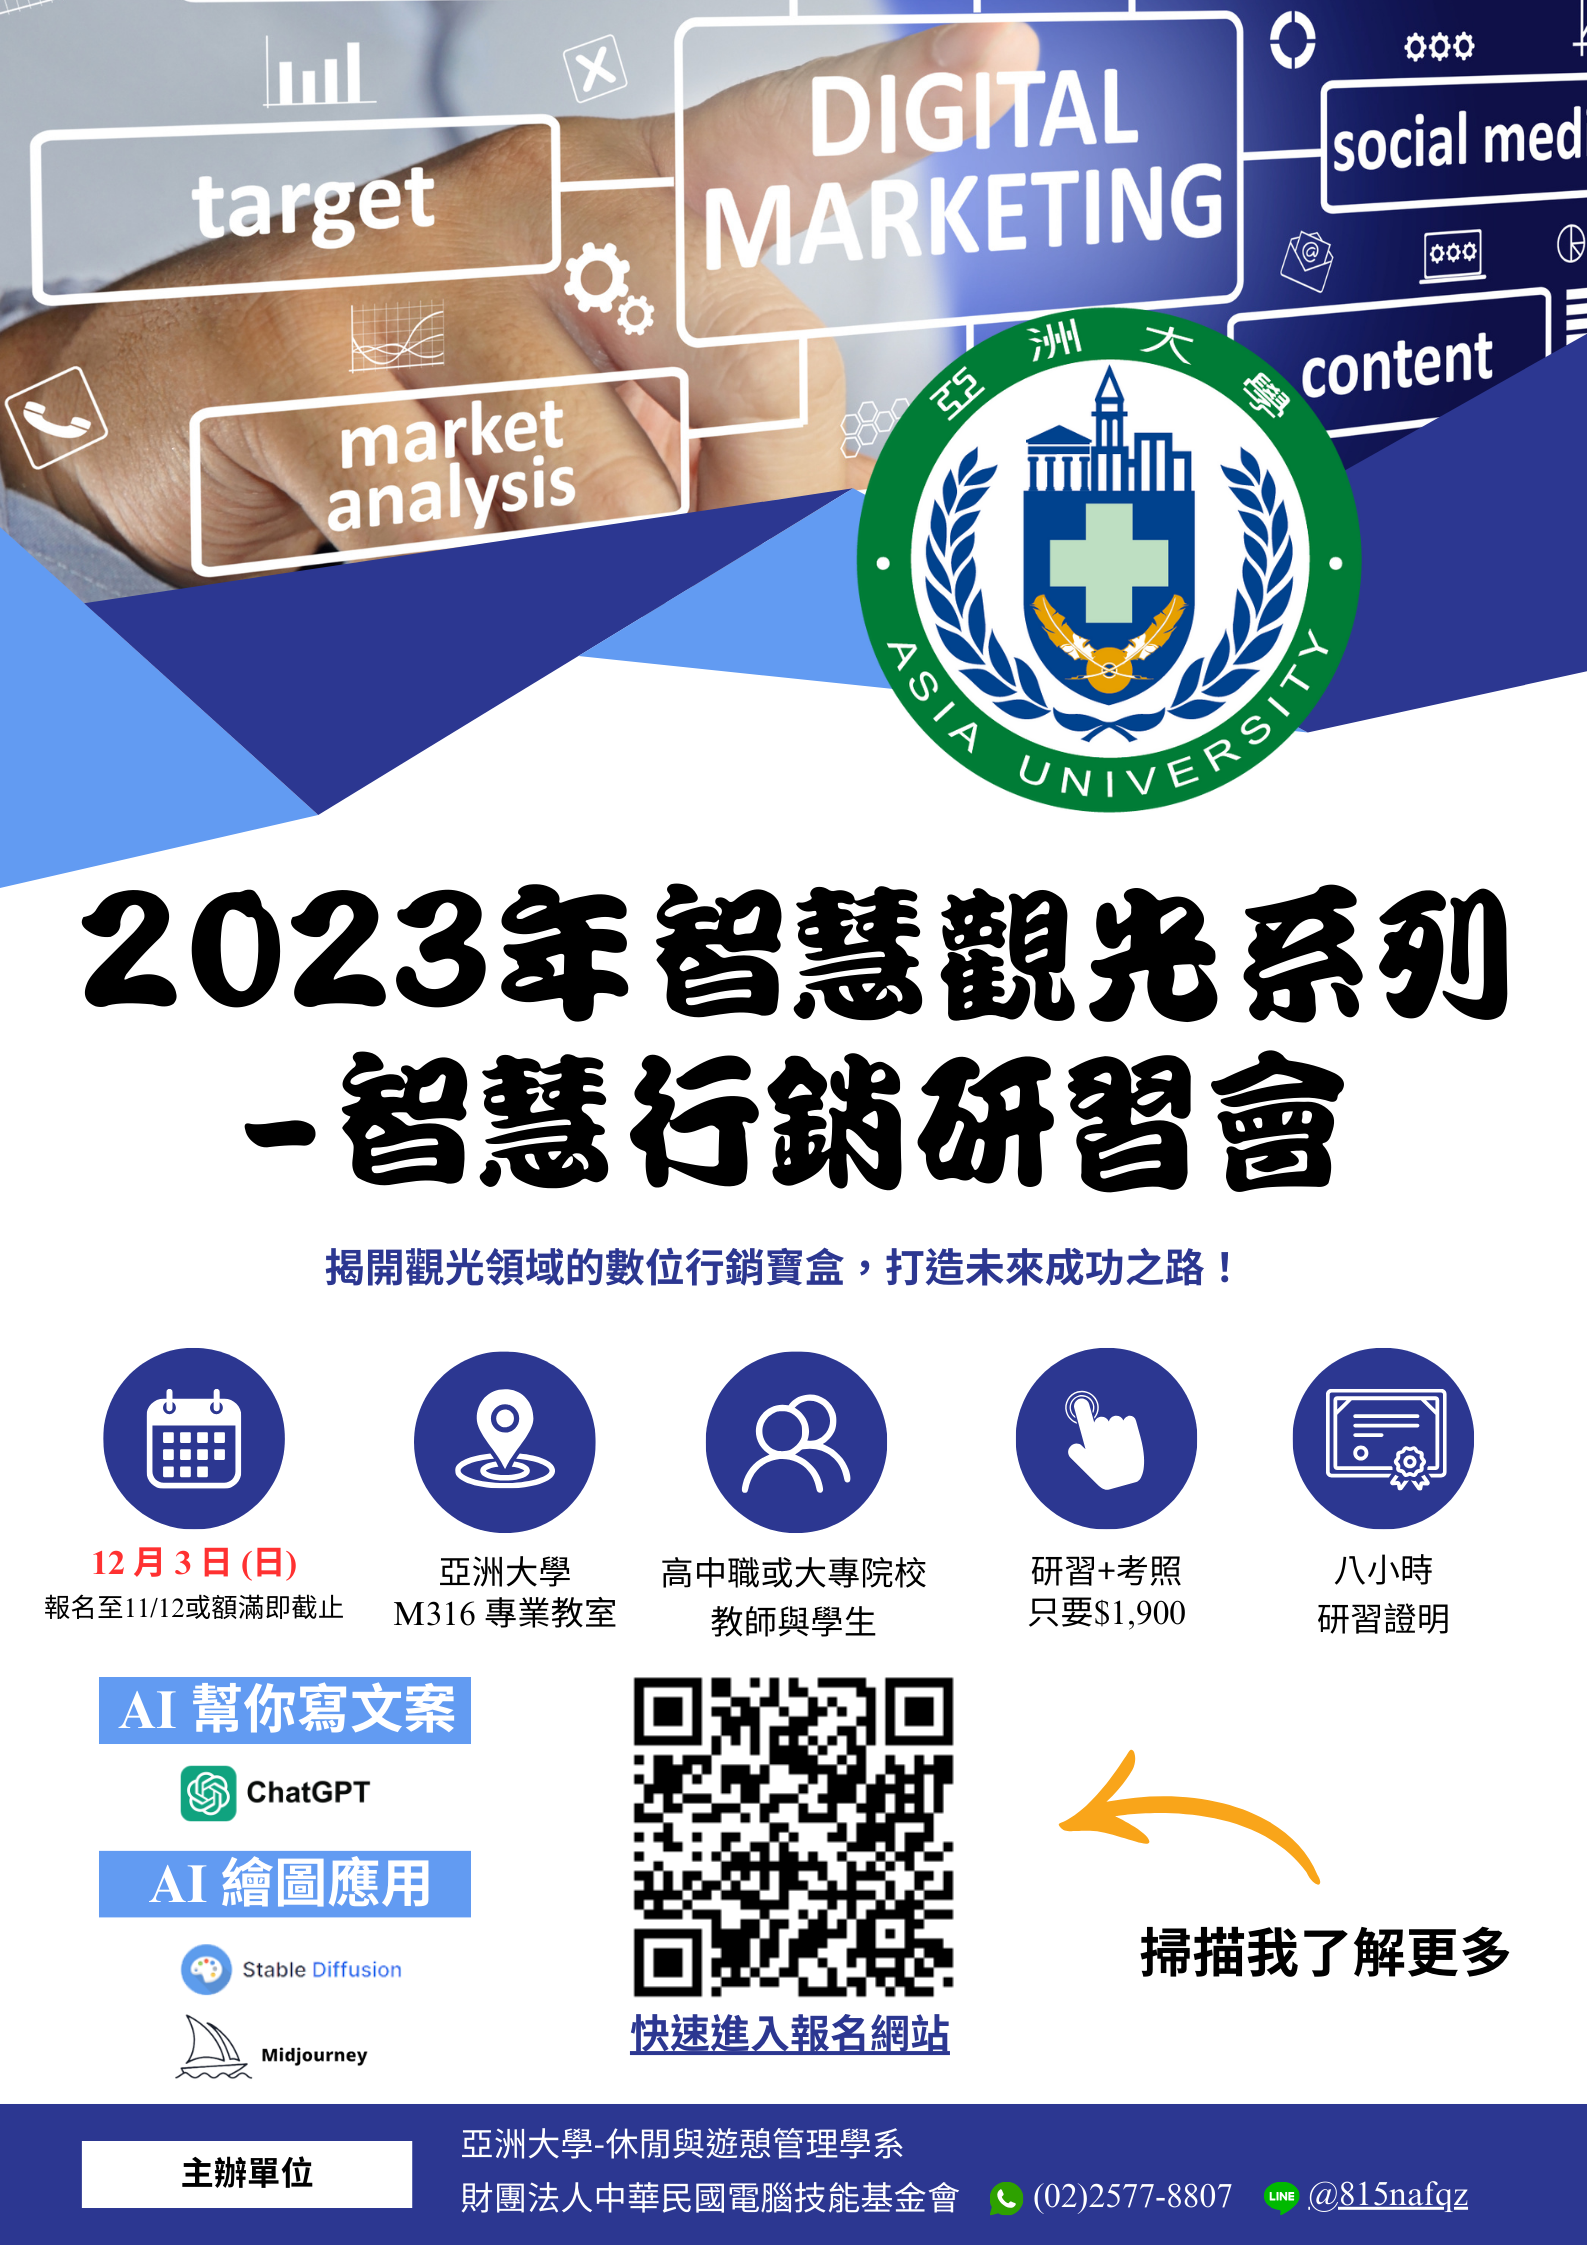 亞洲大學 舉辦「2023 智慧觀光系列-智慧行銷研習會」